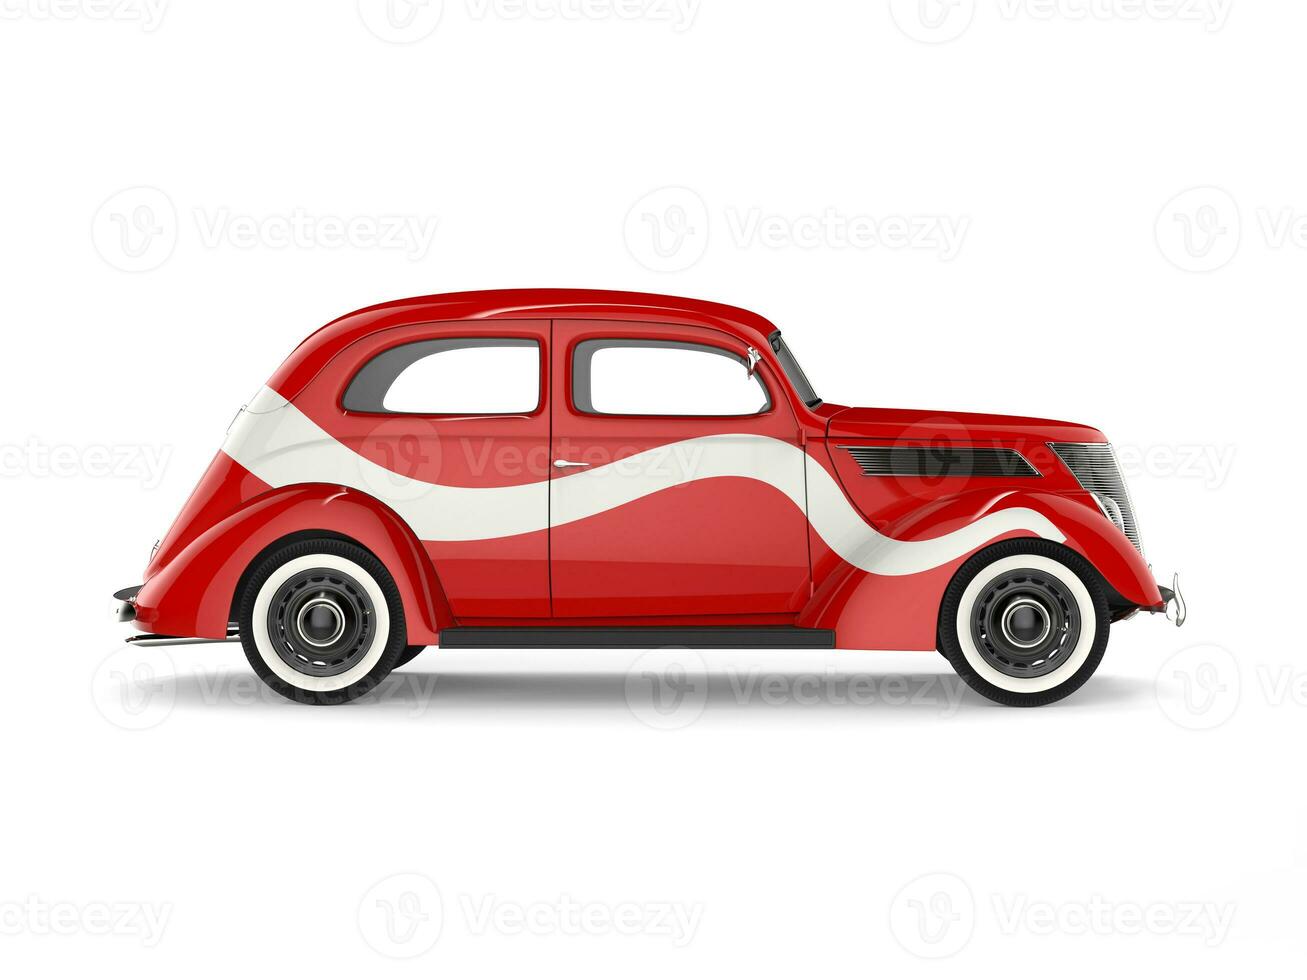 magnifique ancien rouge voiture avec blanc décalque sur ses côté photo